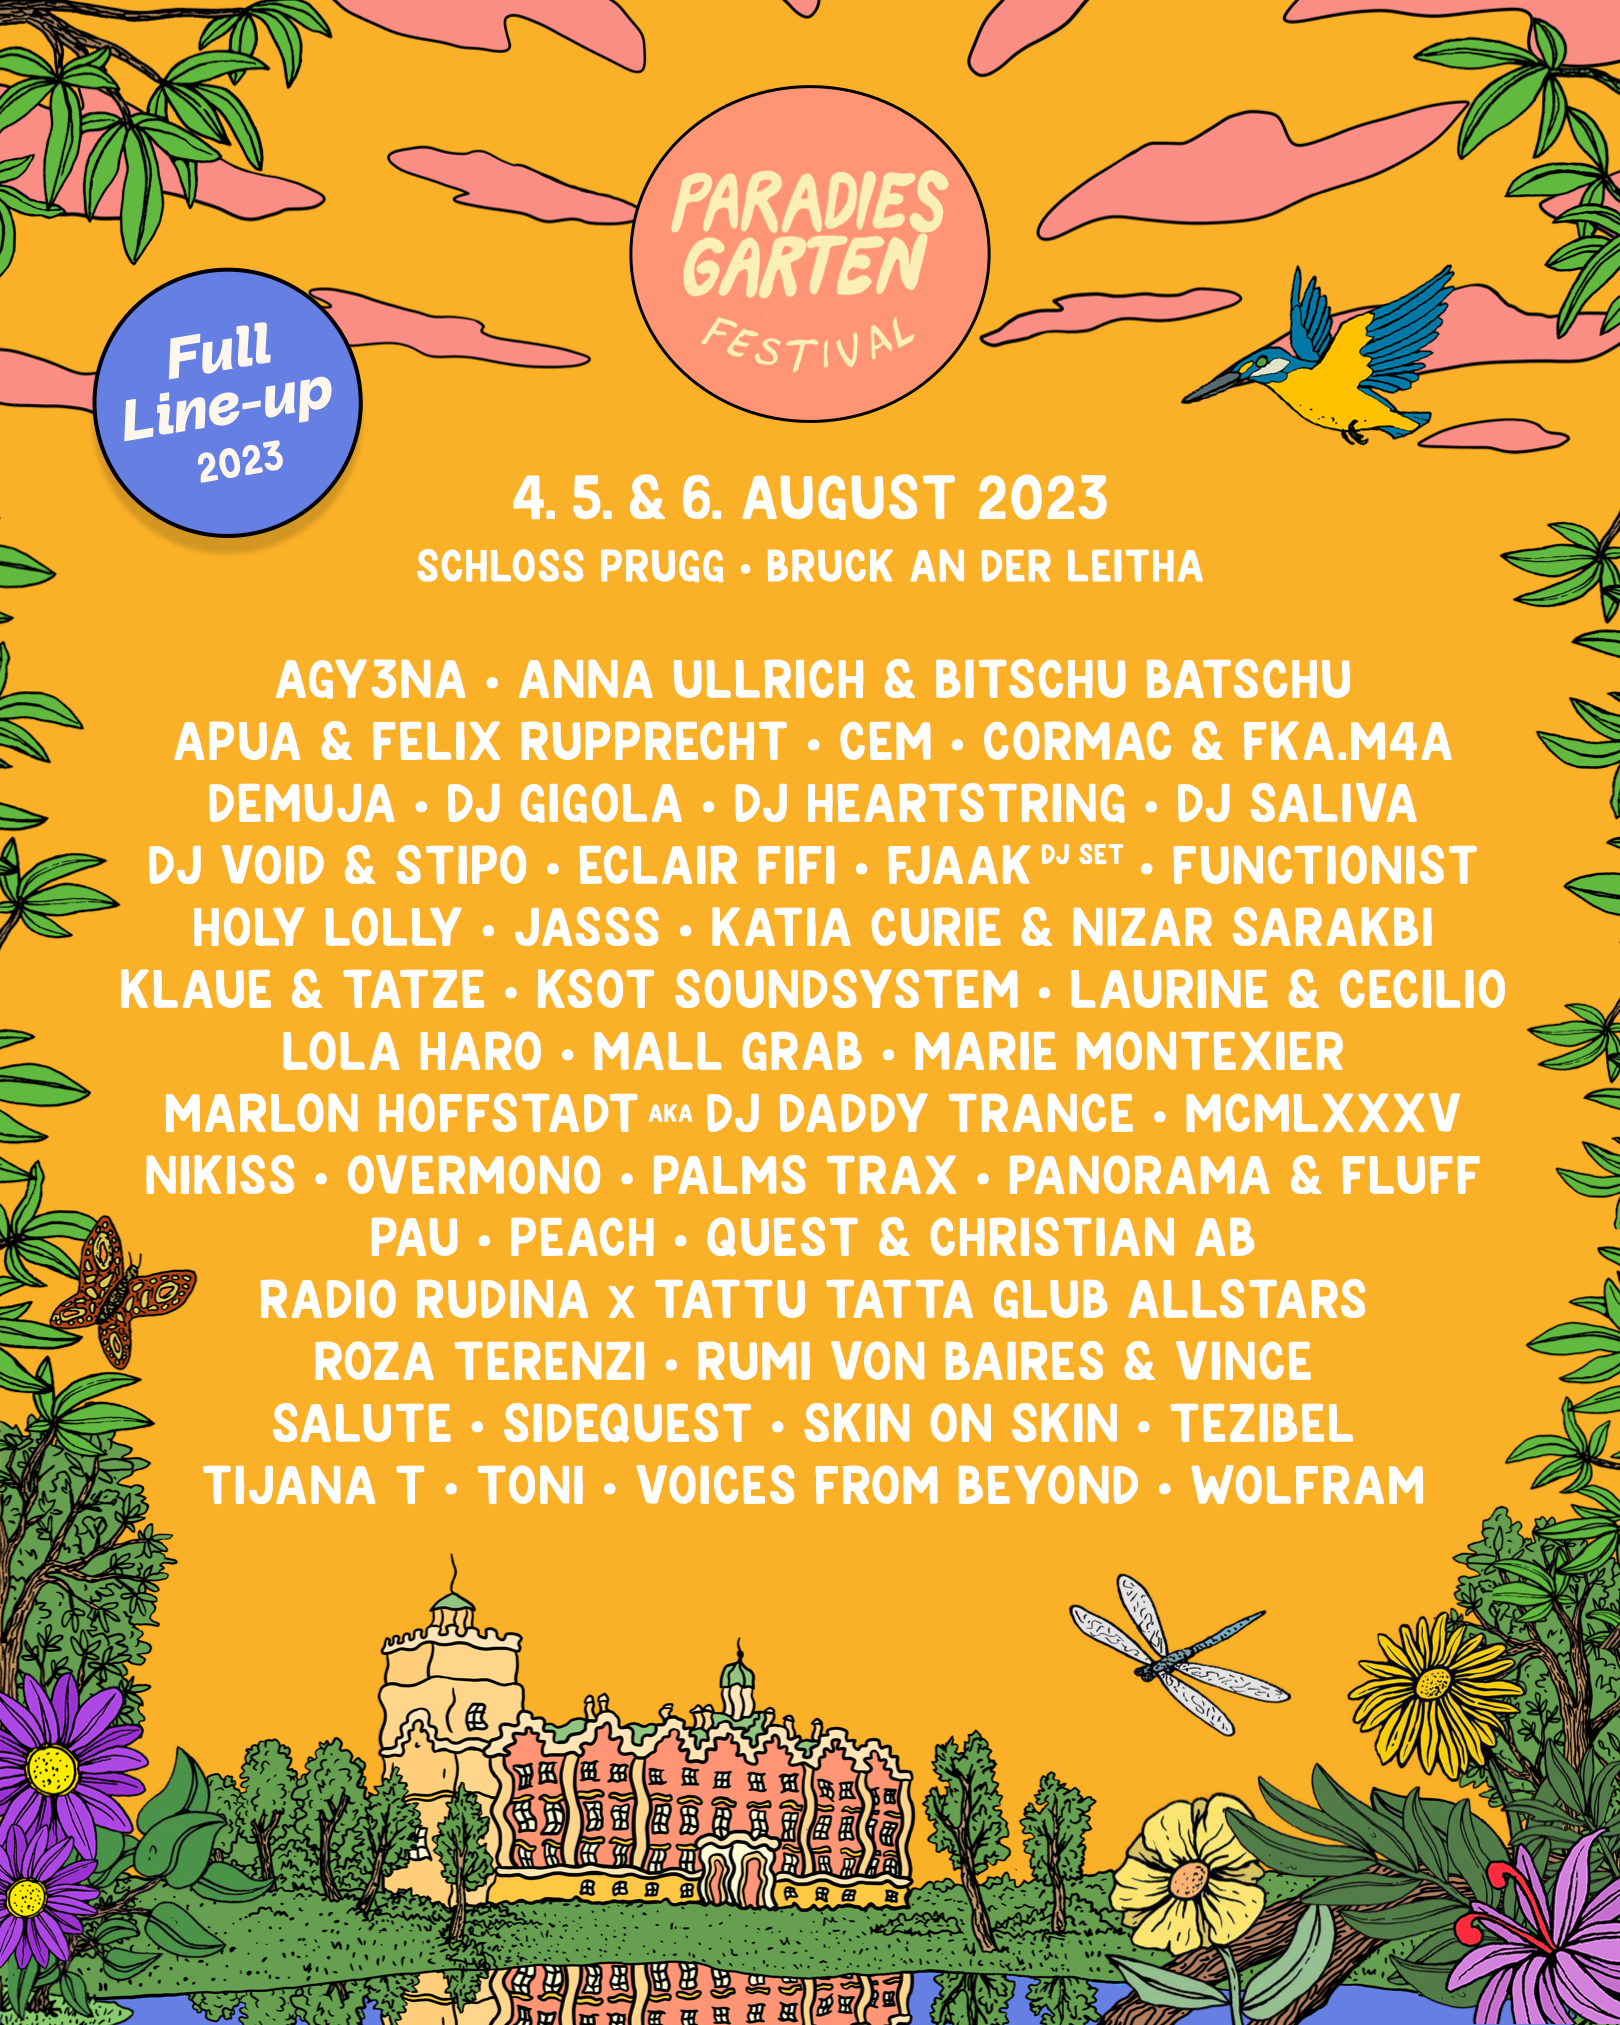 Paradies Garten Festival 2023 - フライヤー表